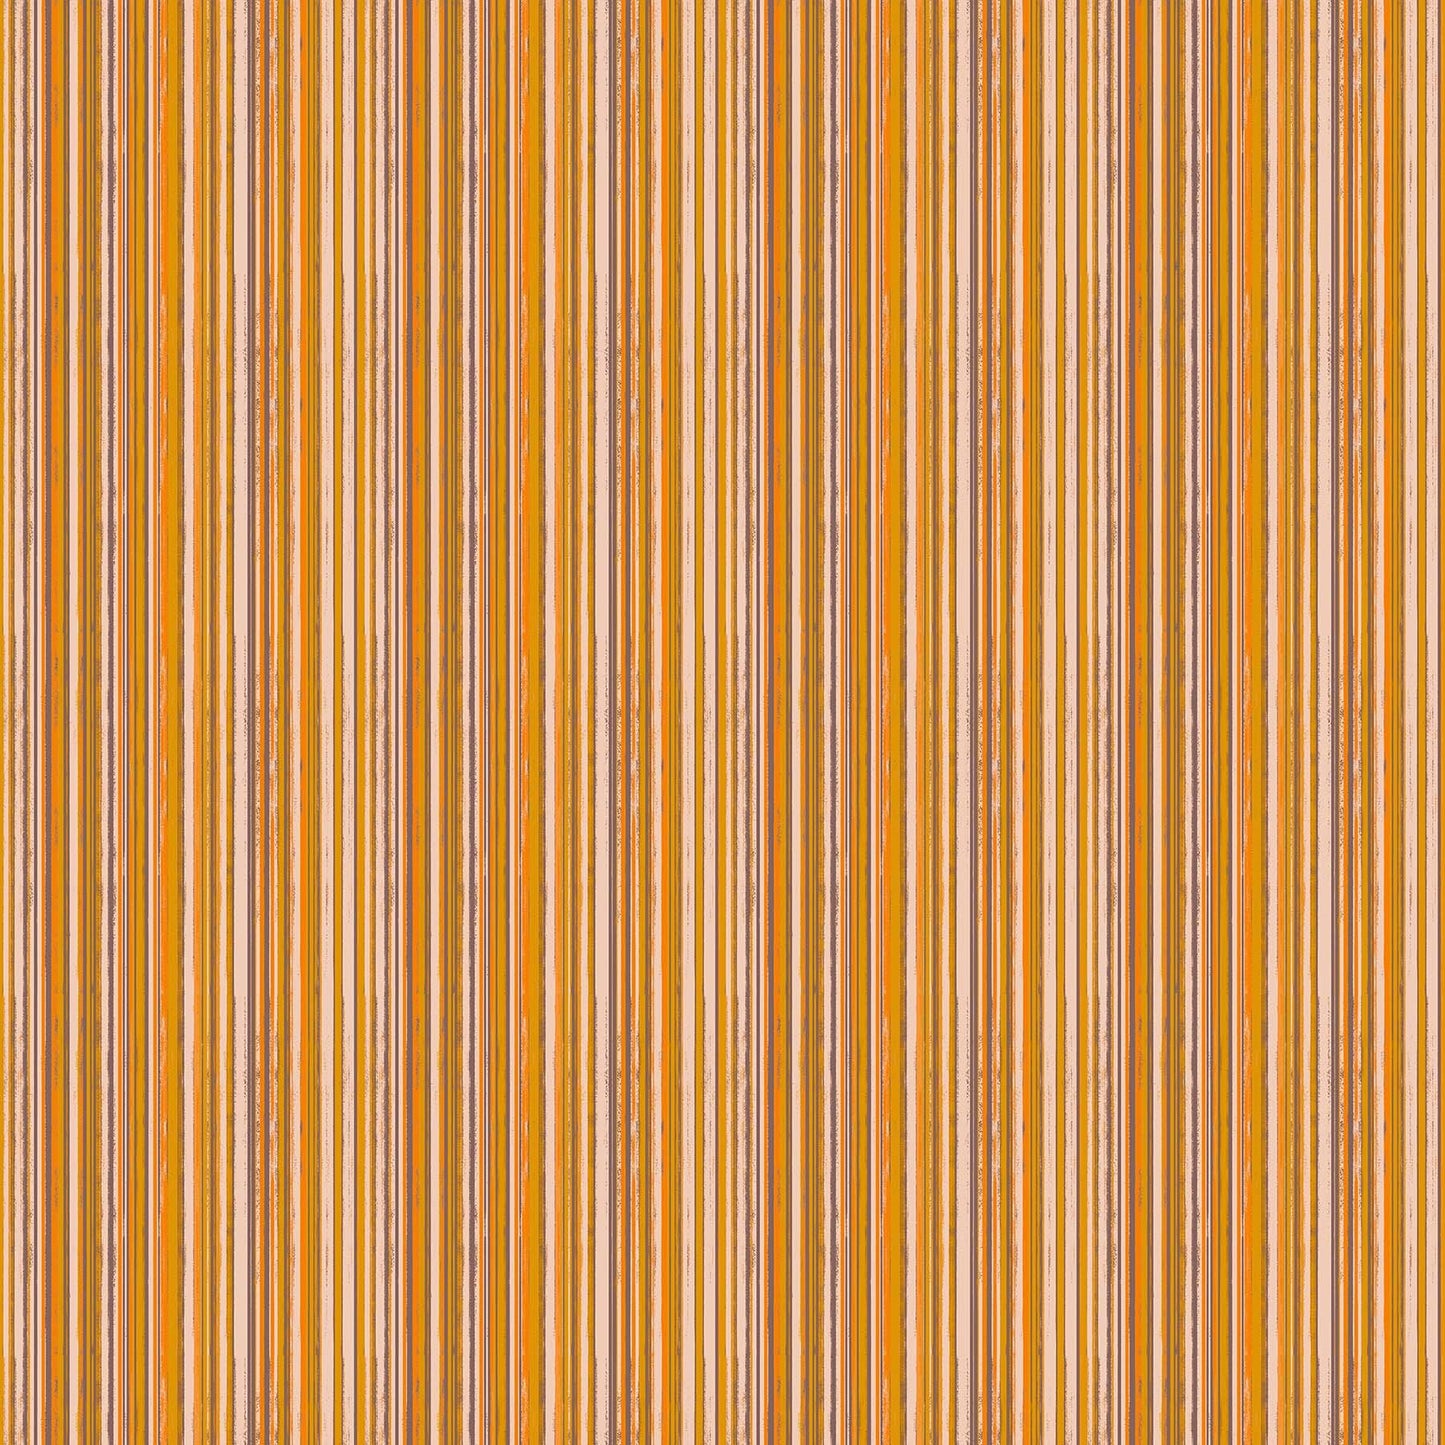 Summer's End Orange Stripe